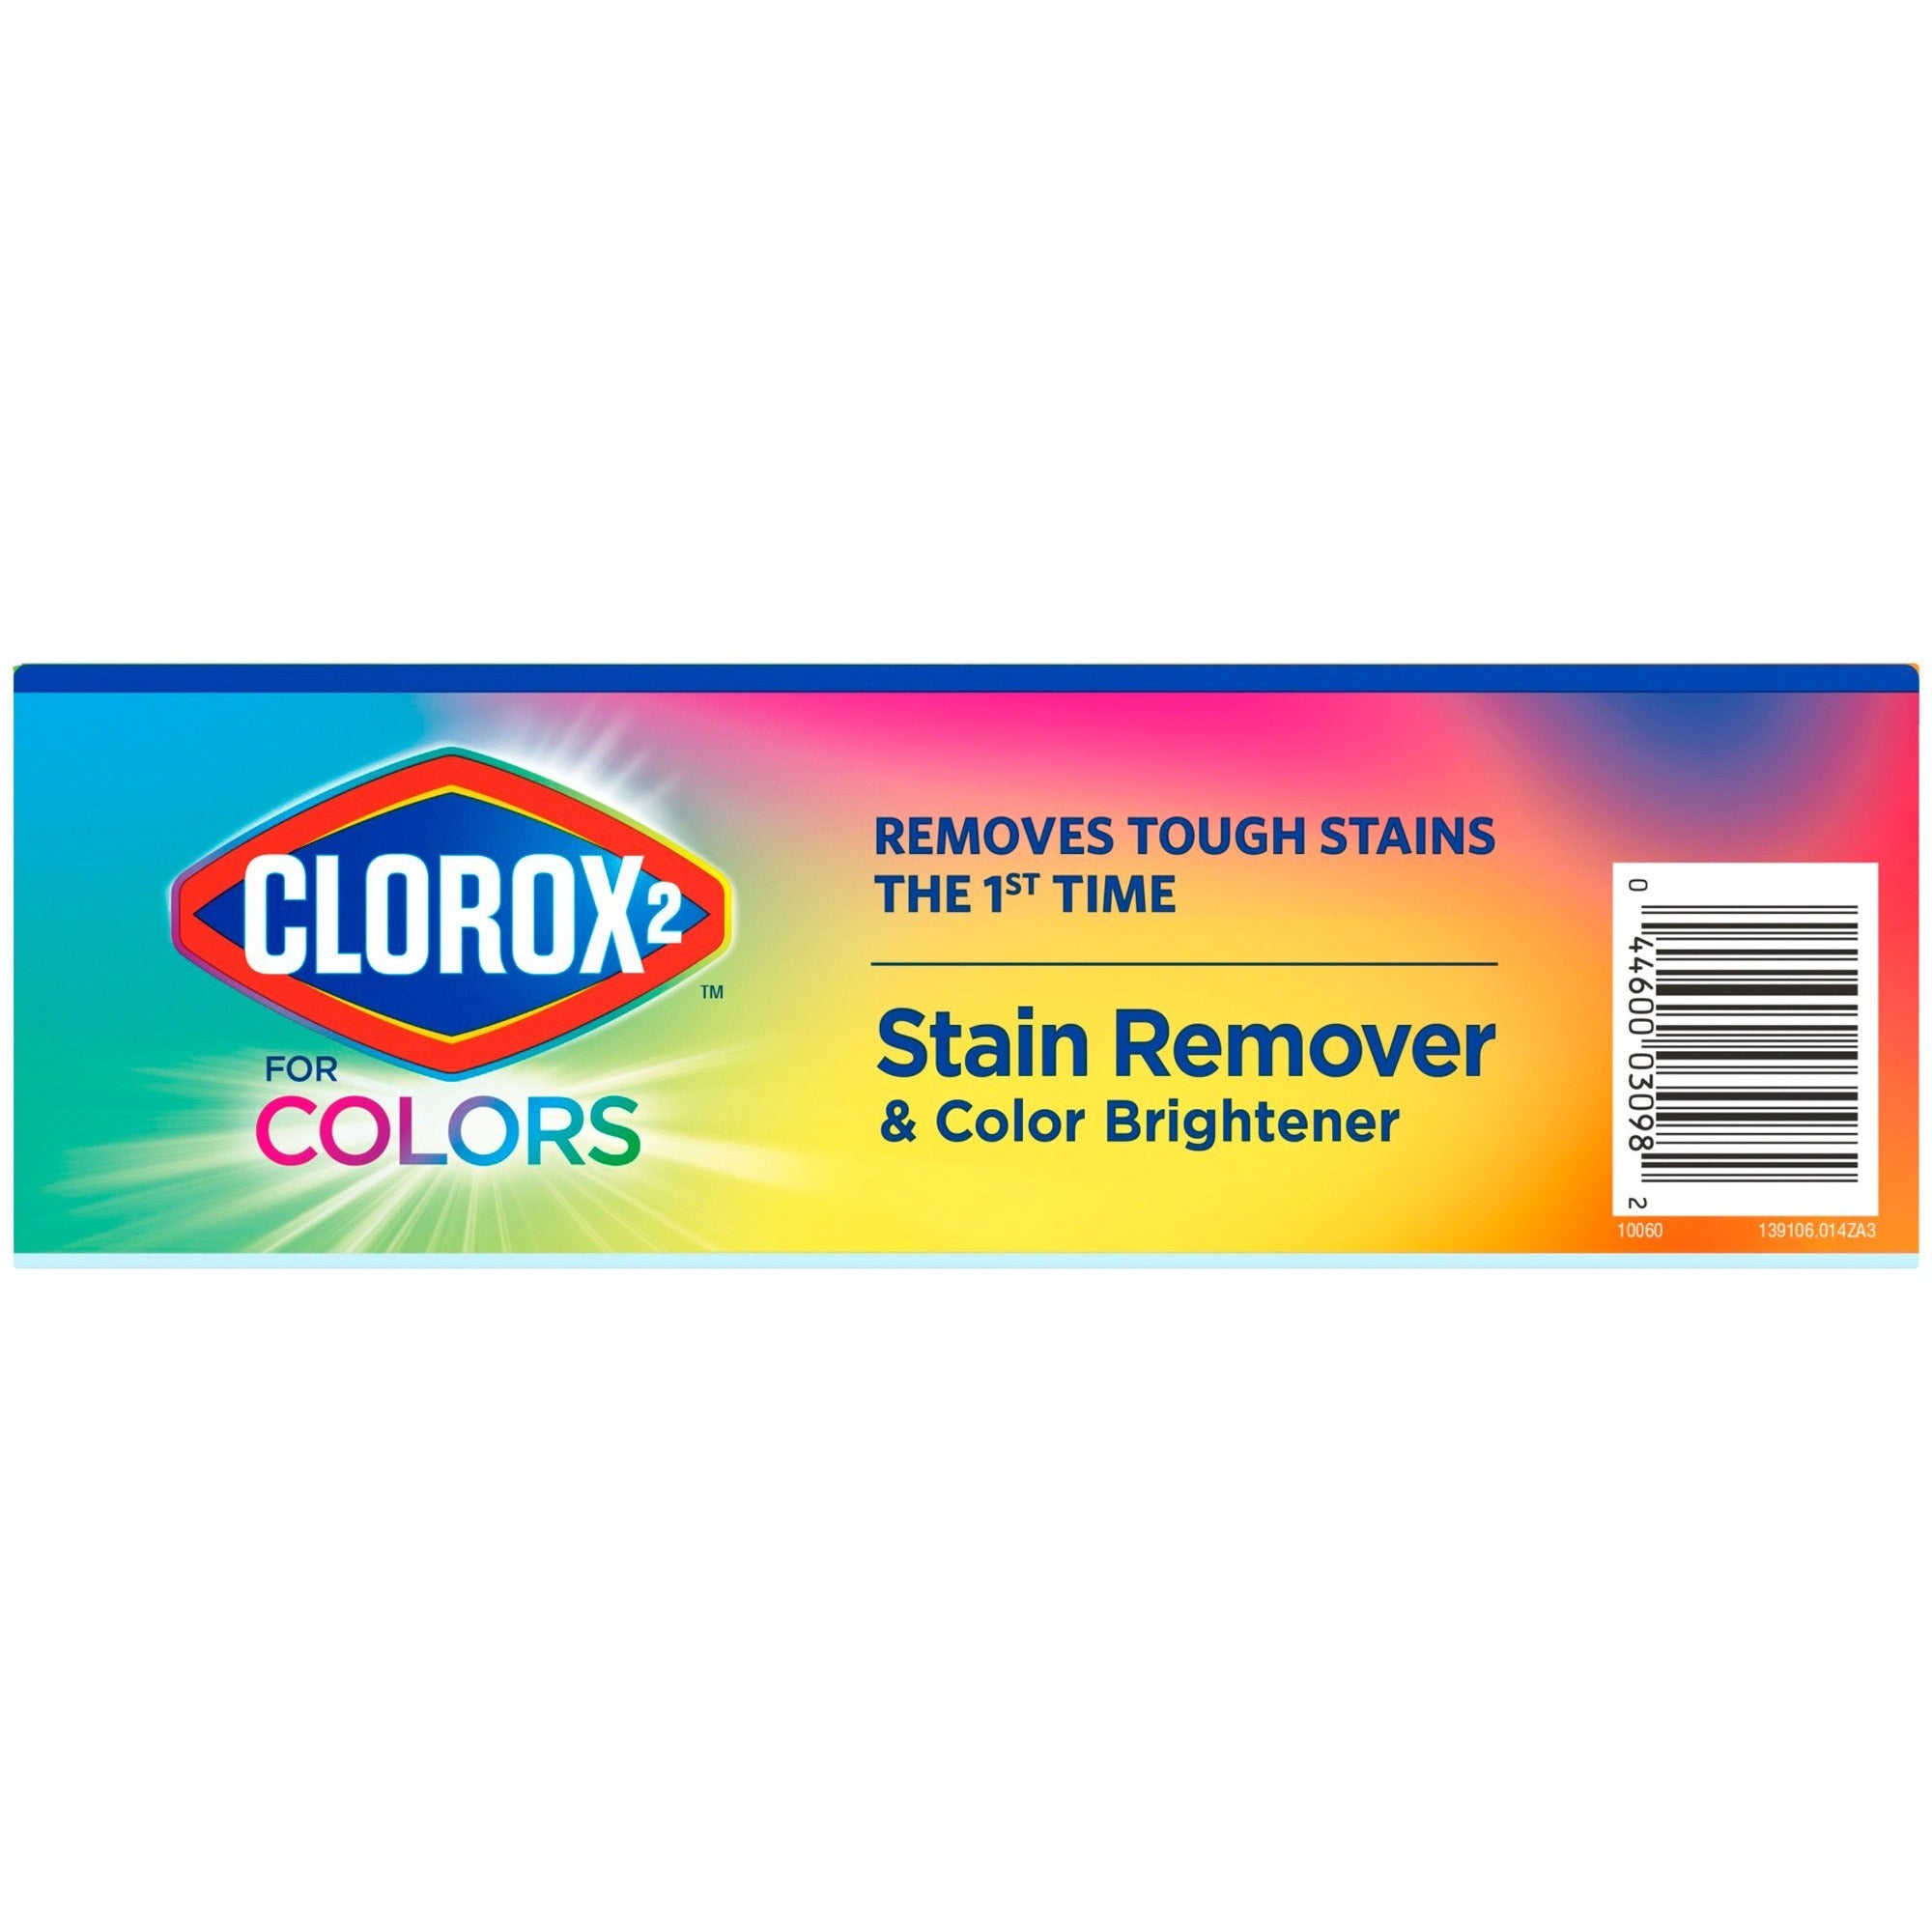 clorox-2-for-colors-stain-remover-and-color-brightener-powder-4920-oz-307-lb-4-carton-multi_clo03098ct - 3